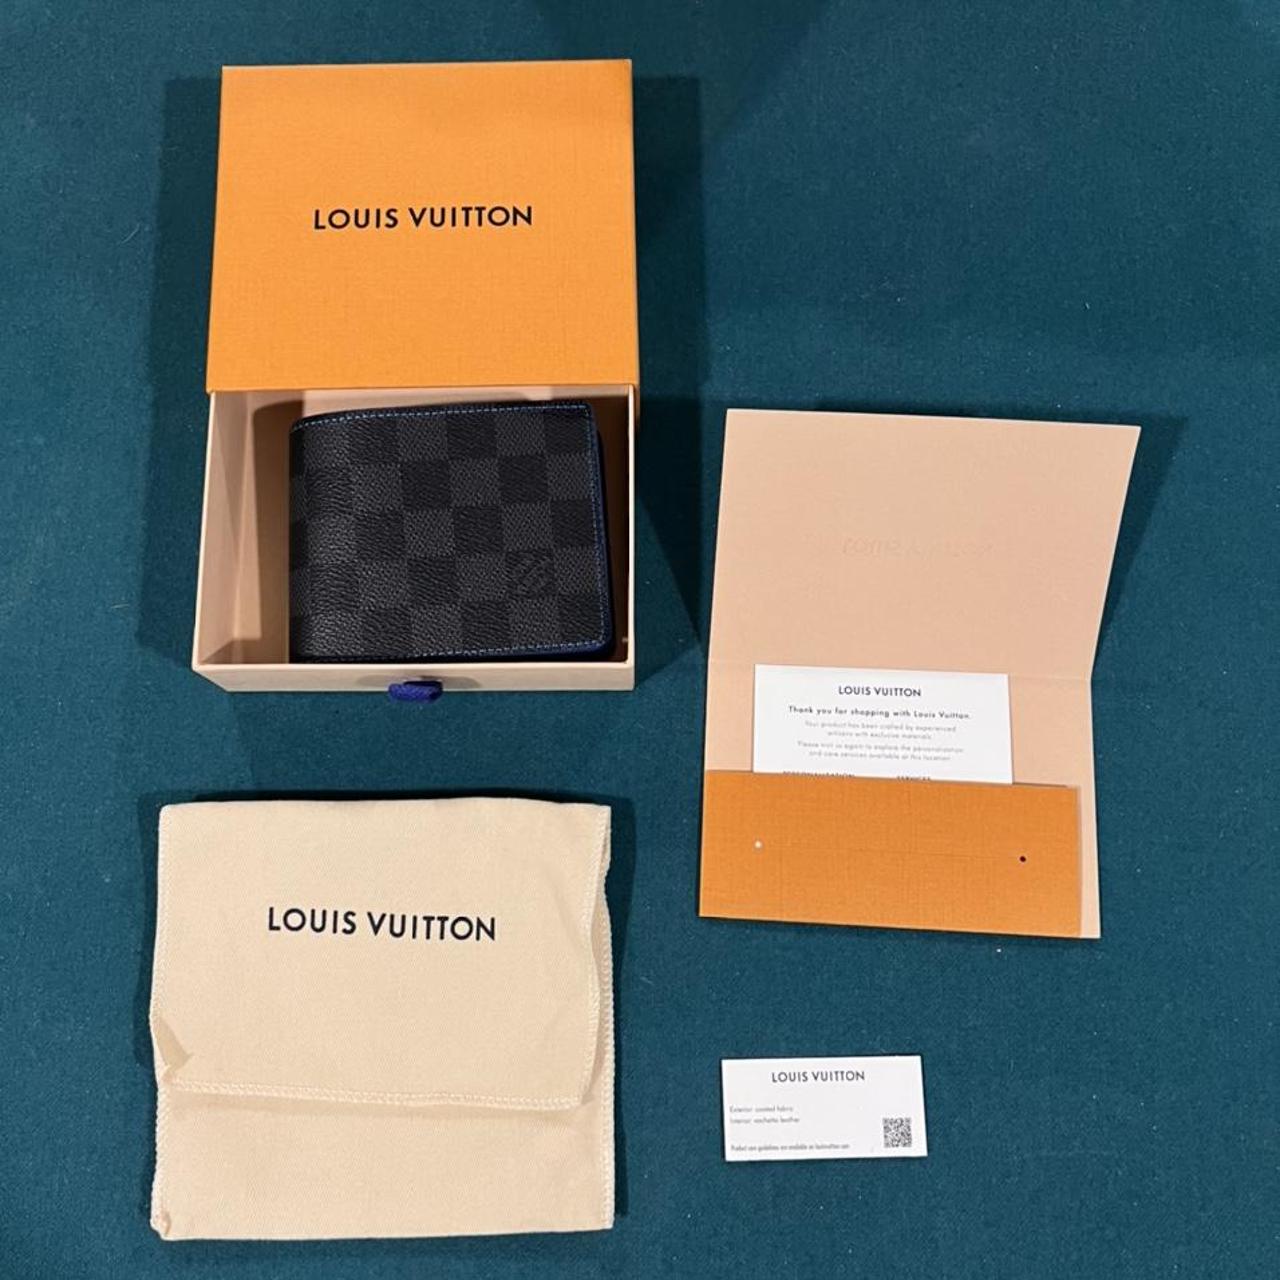 Louis Vuitton Set - LEGGINGS & SPORTY TOP BLUE - Depop